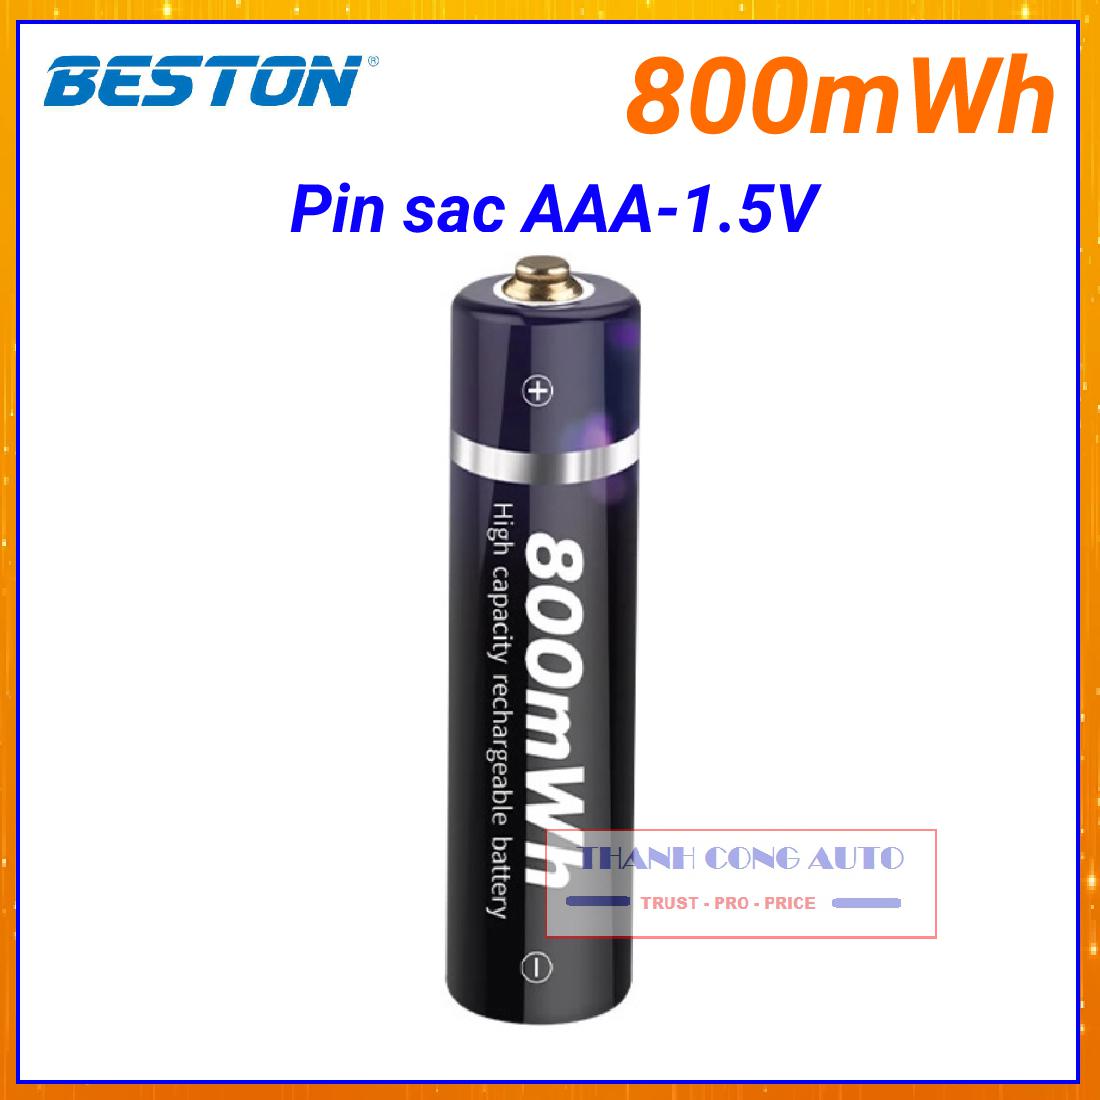 Pin sạc Lithium 1,5V- AAA chính hãng Beston 800mWh cao cấp